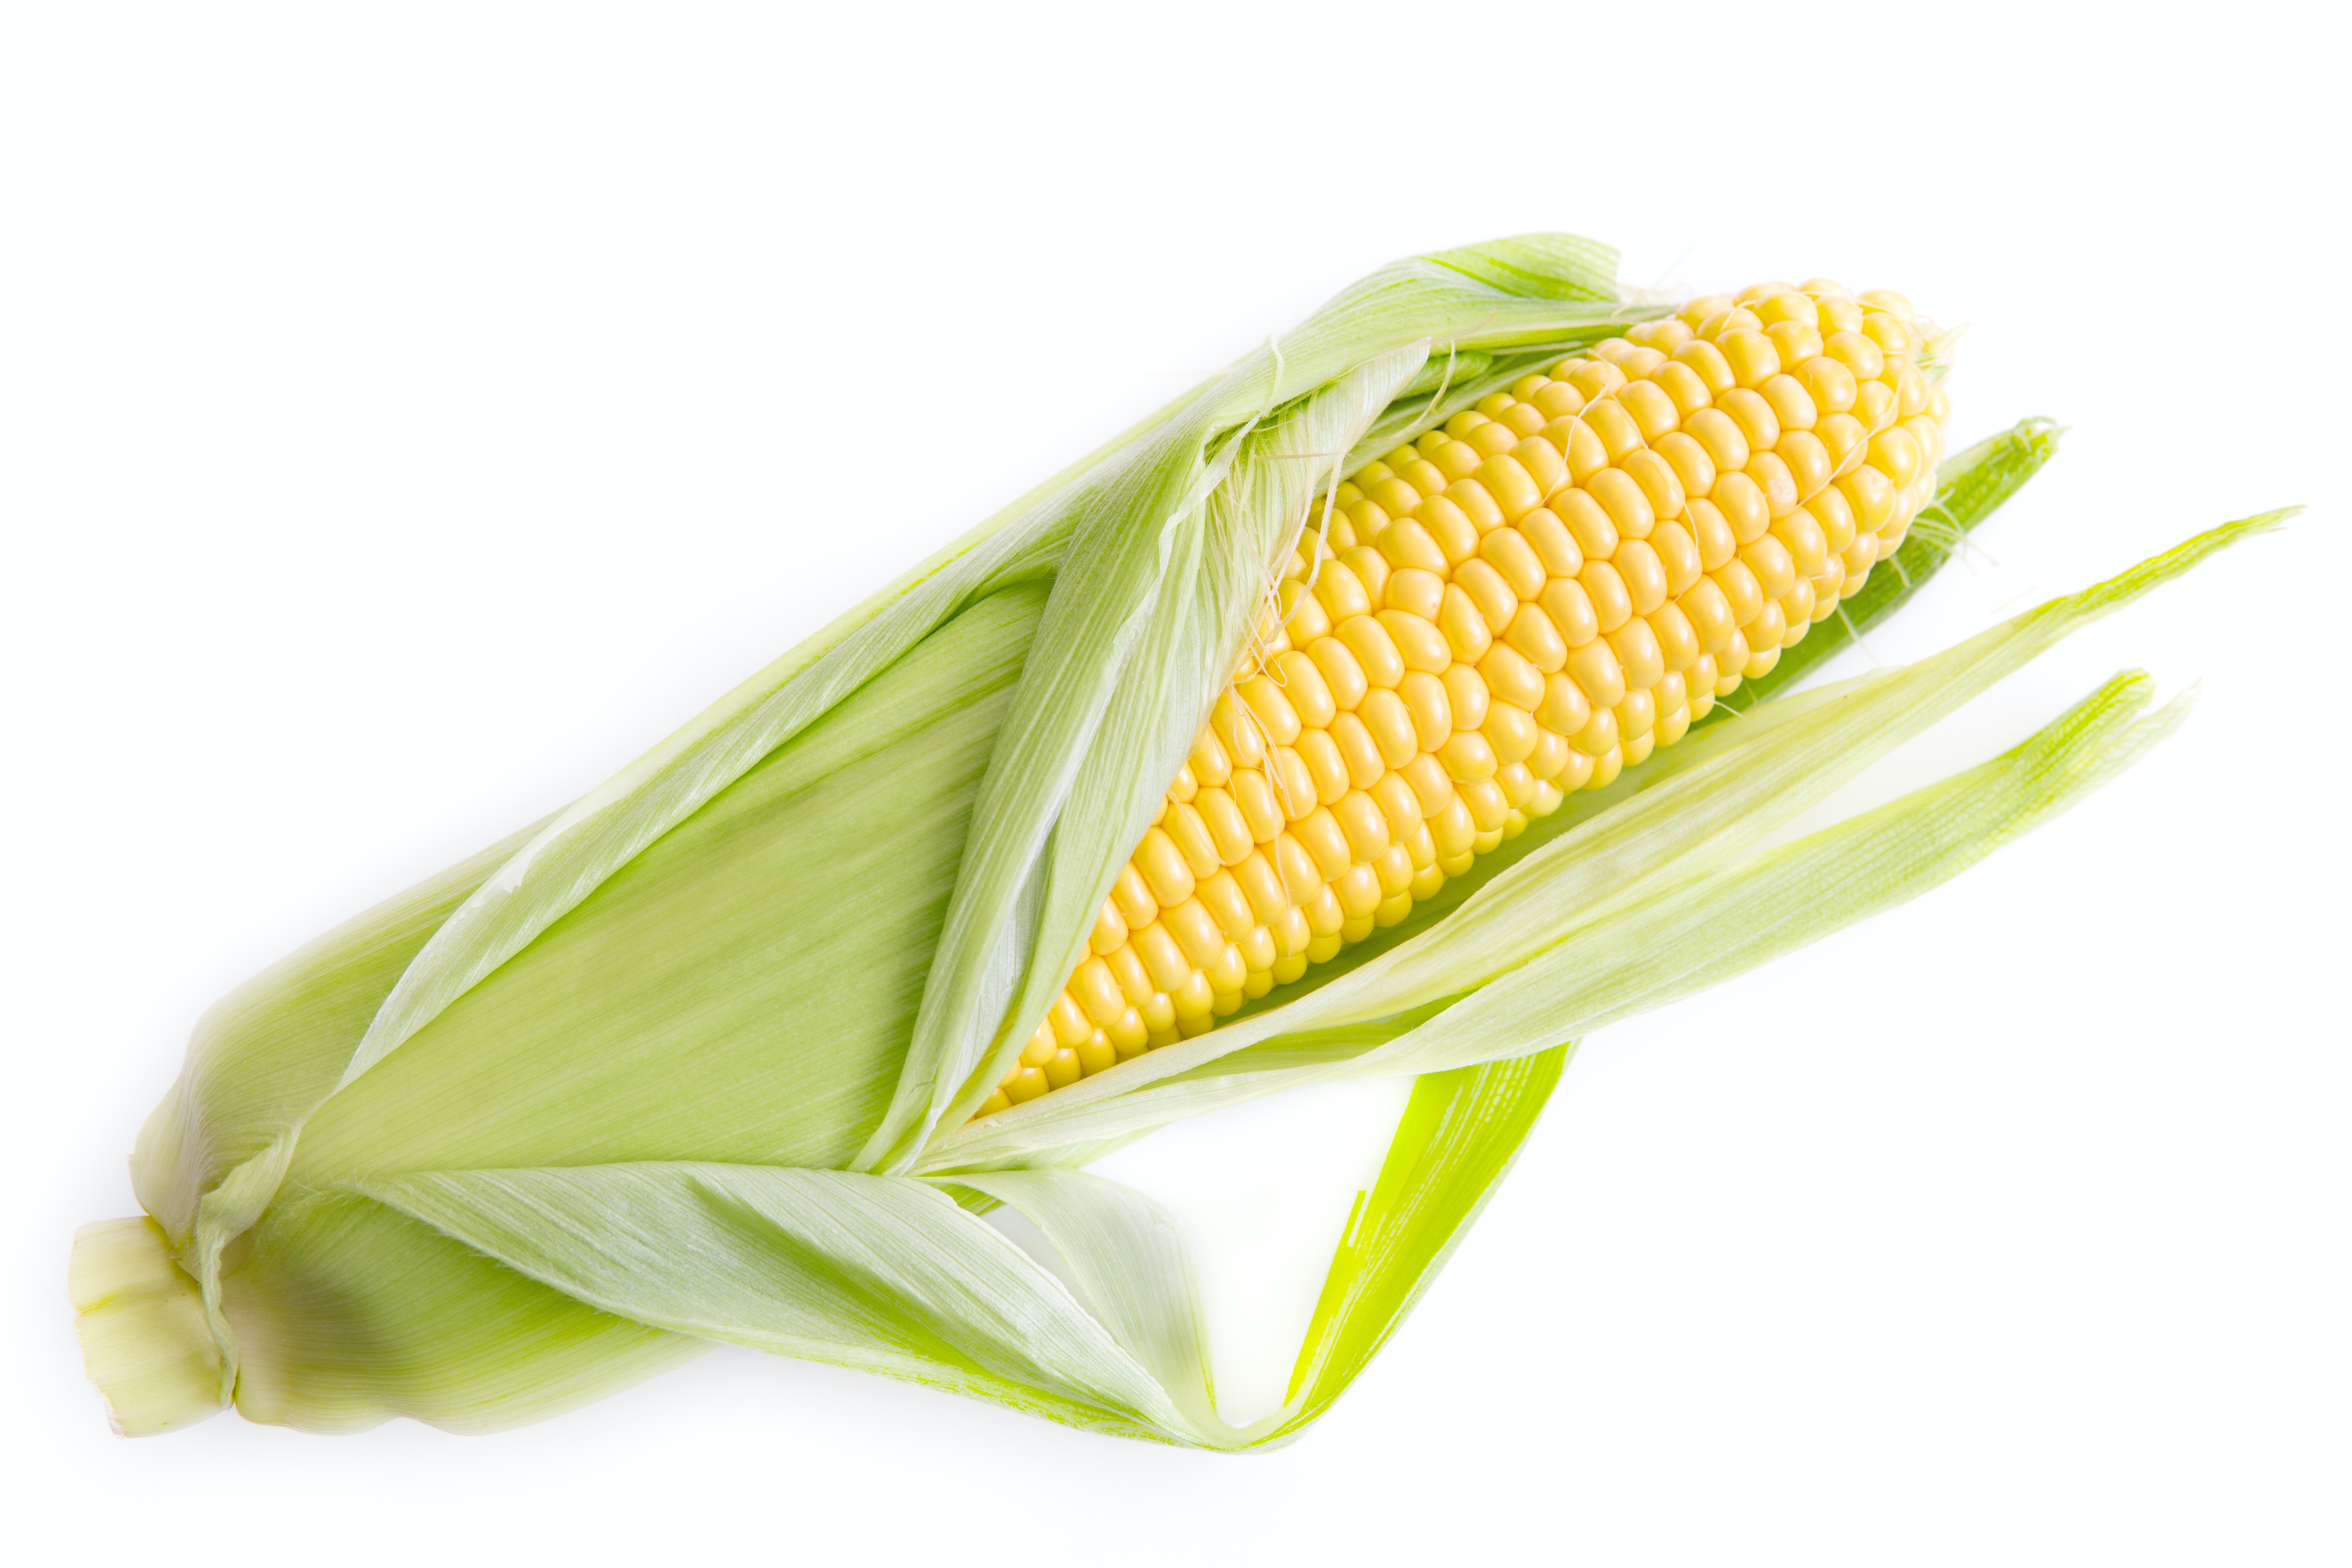 Corn note. Кукурузная кочерыжка. Кукуруза початок. Початки семенной кукурузы. Кукуруза майбико.